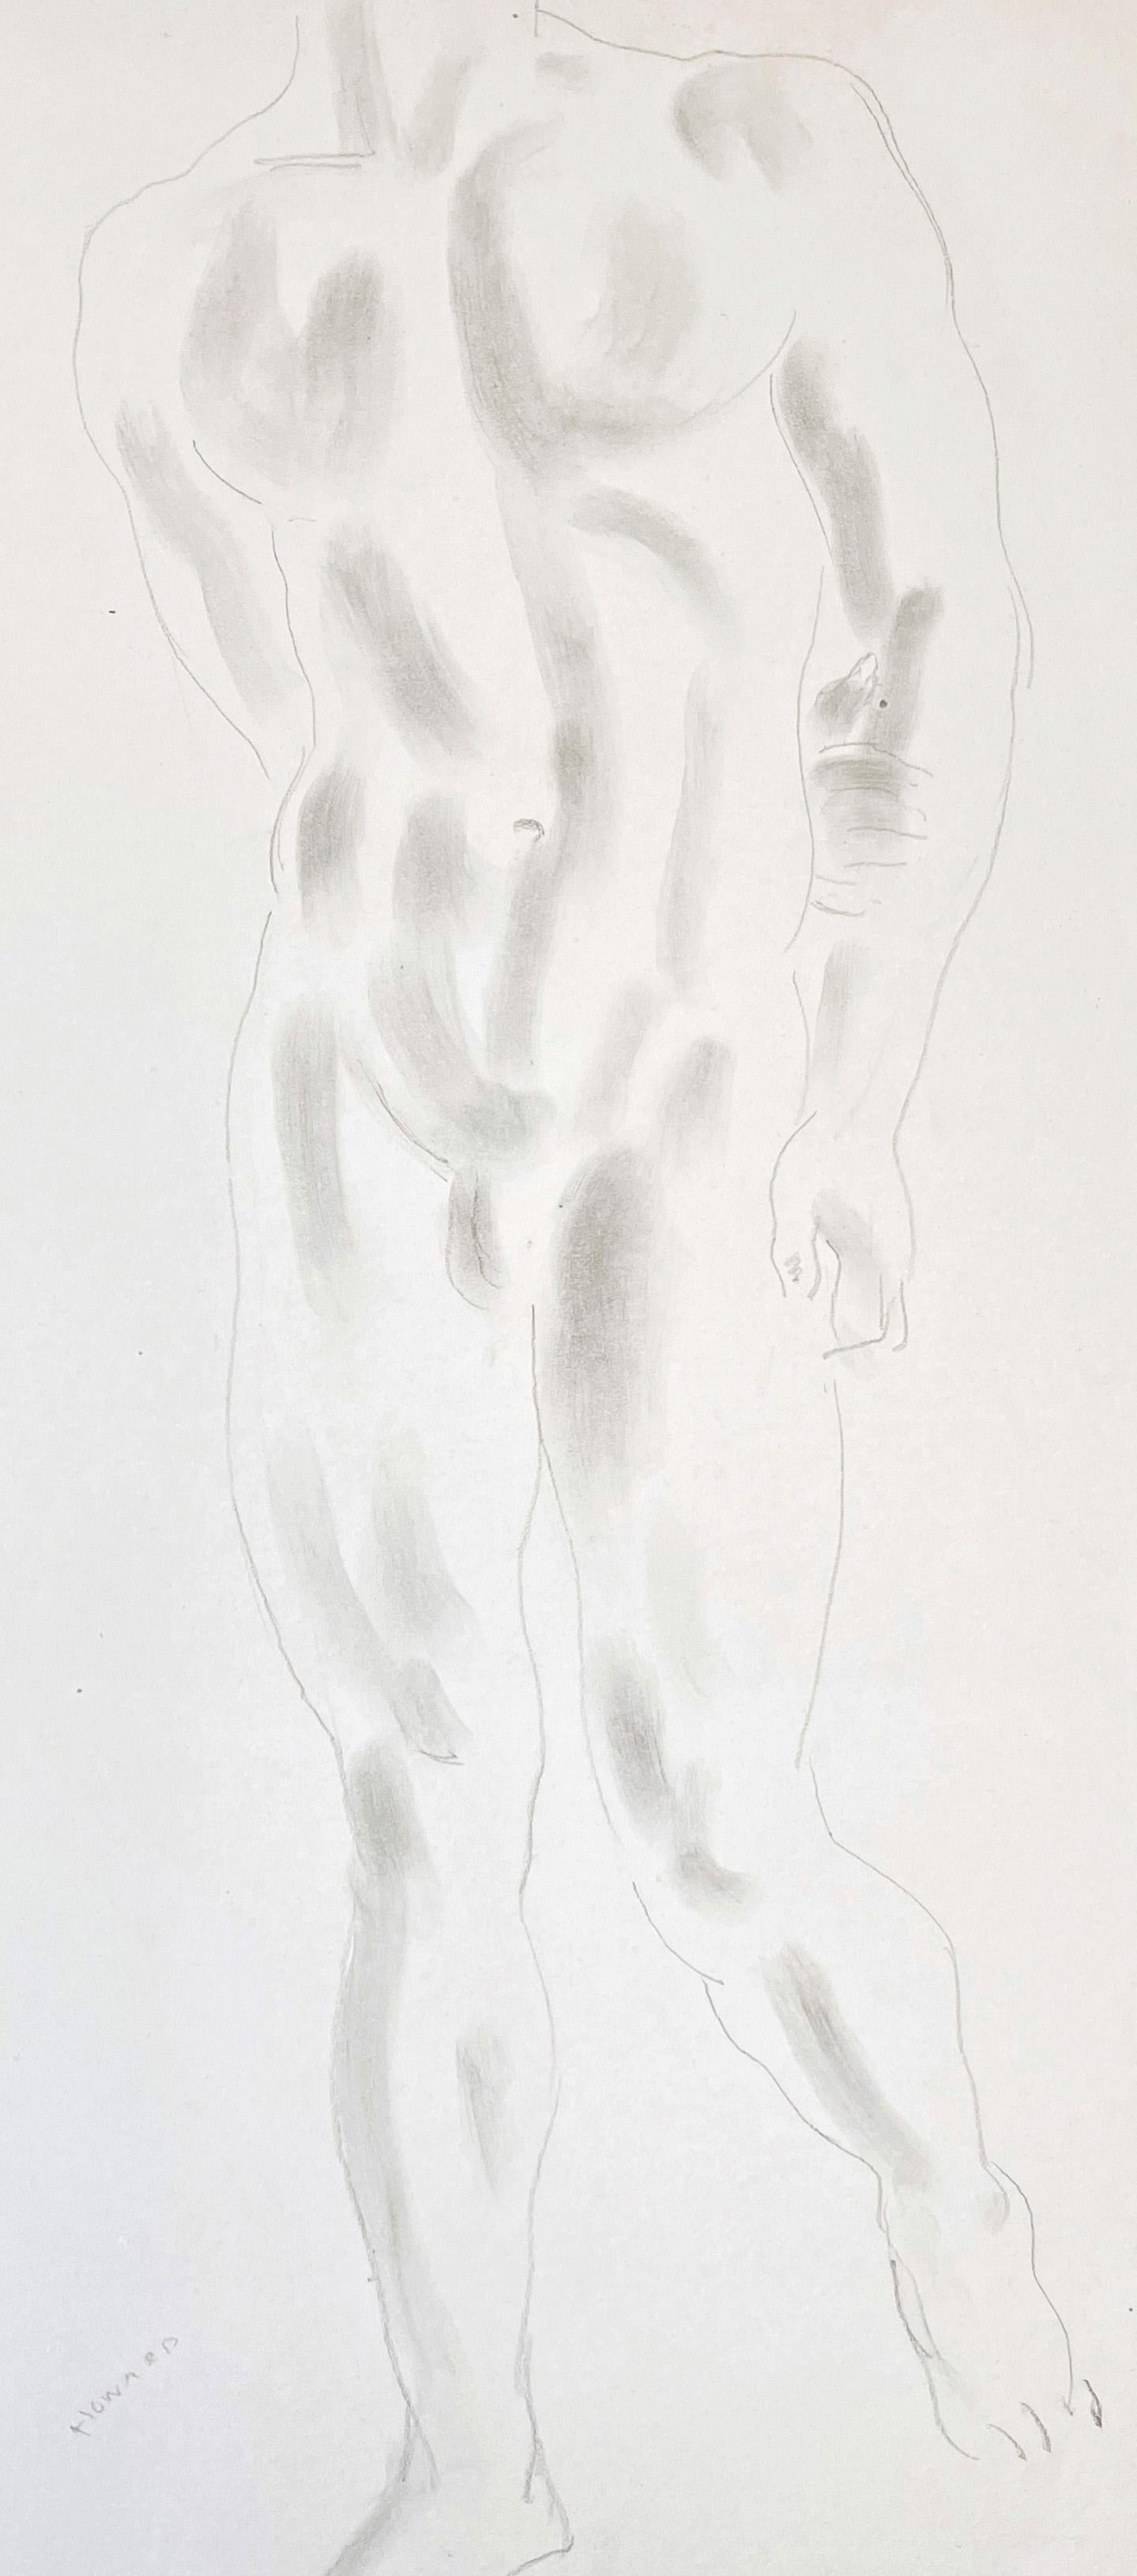 Dieser ganzfigurige männliche Akt wurde von Cecil de Blaquiere Howard, dem außerordentlich erfolgreichen kanadisch-amerikanisch-französischen Bildhauer, mit Bleistift und federleichter Tuschelavierung gezeichnet, wodurch ein blasses, geisterhaftes